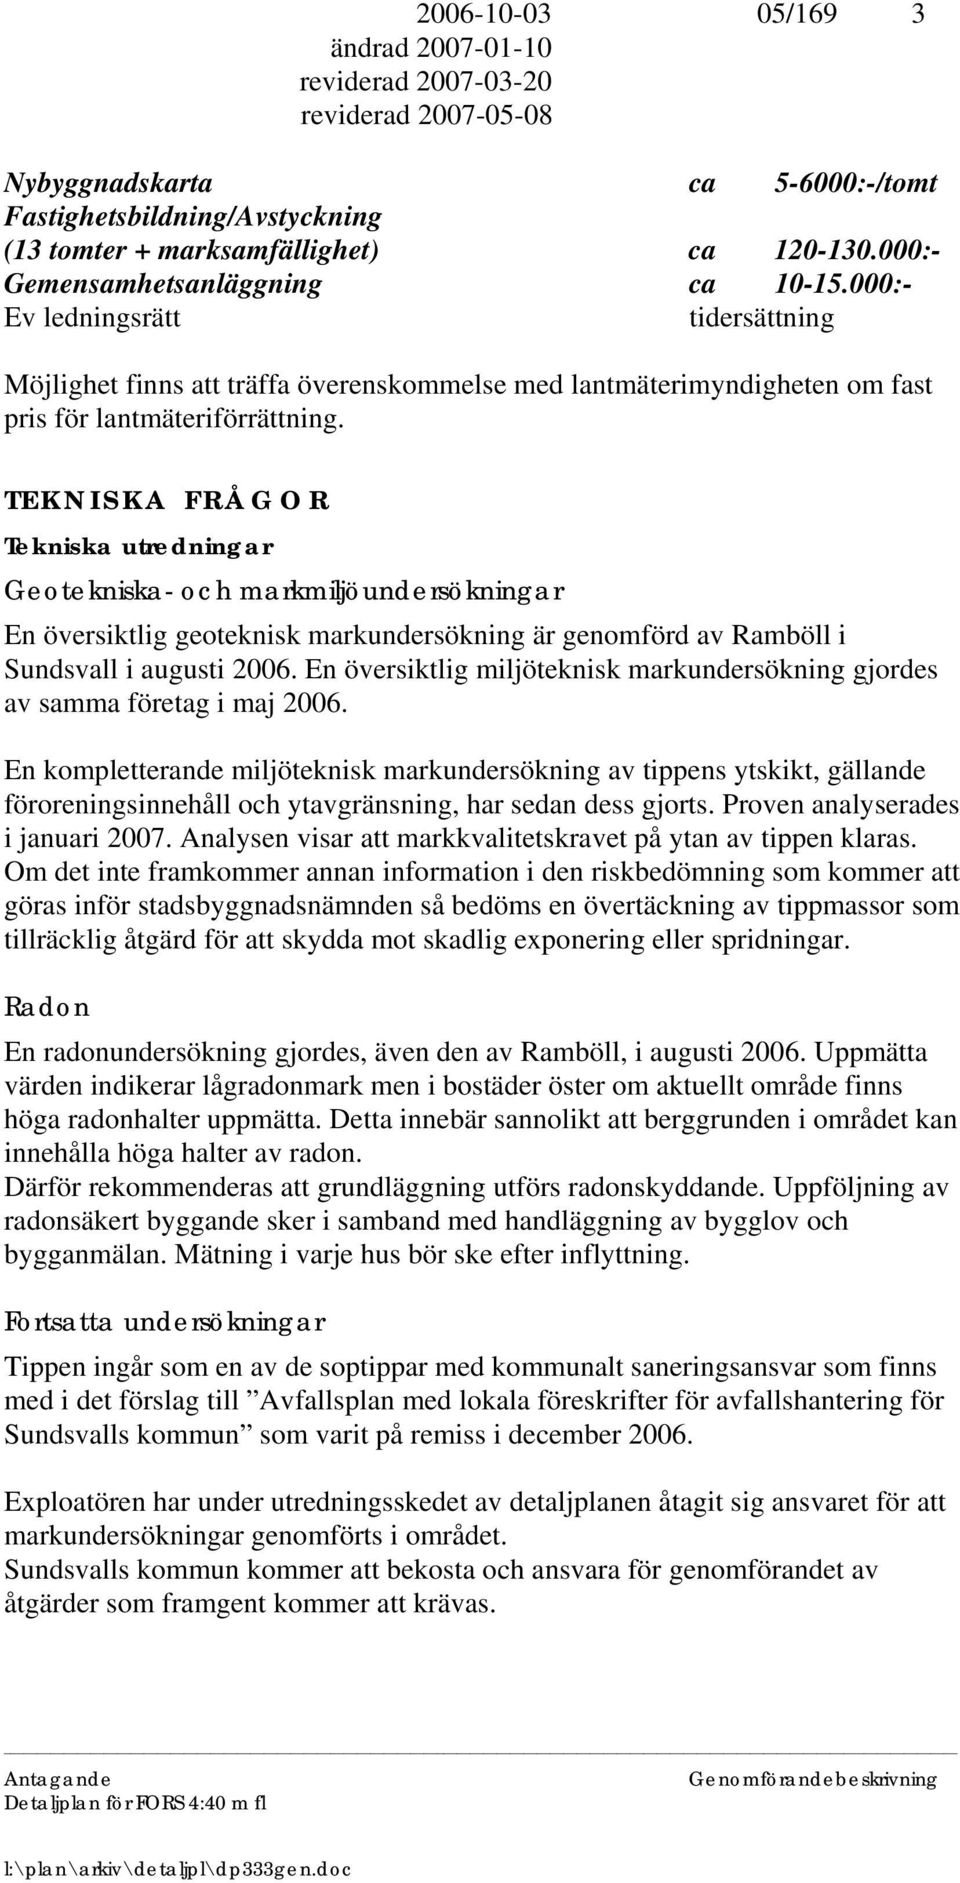 TEKNISKA FRÅGOR Tekniska utredningar Geotekniska- och markmiljöundersökningar En översiktlig geoteknisk markundersökning är genomförd av Ramböll i Sundsvall i augusti 2006.